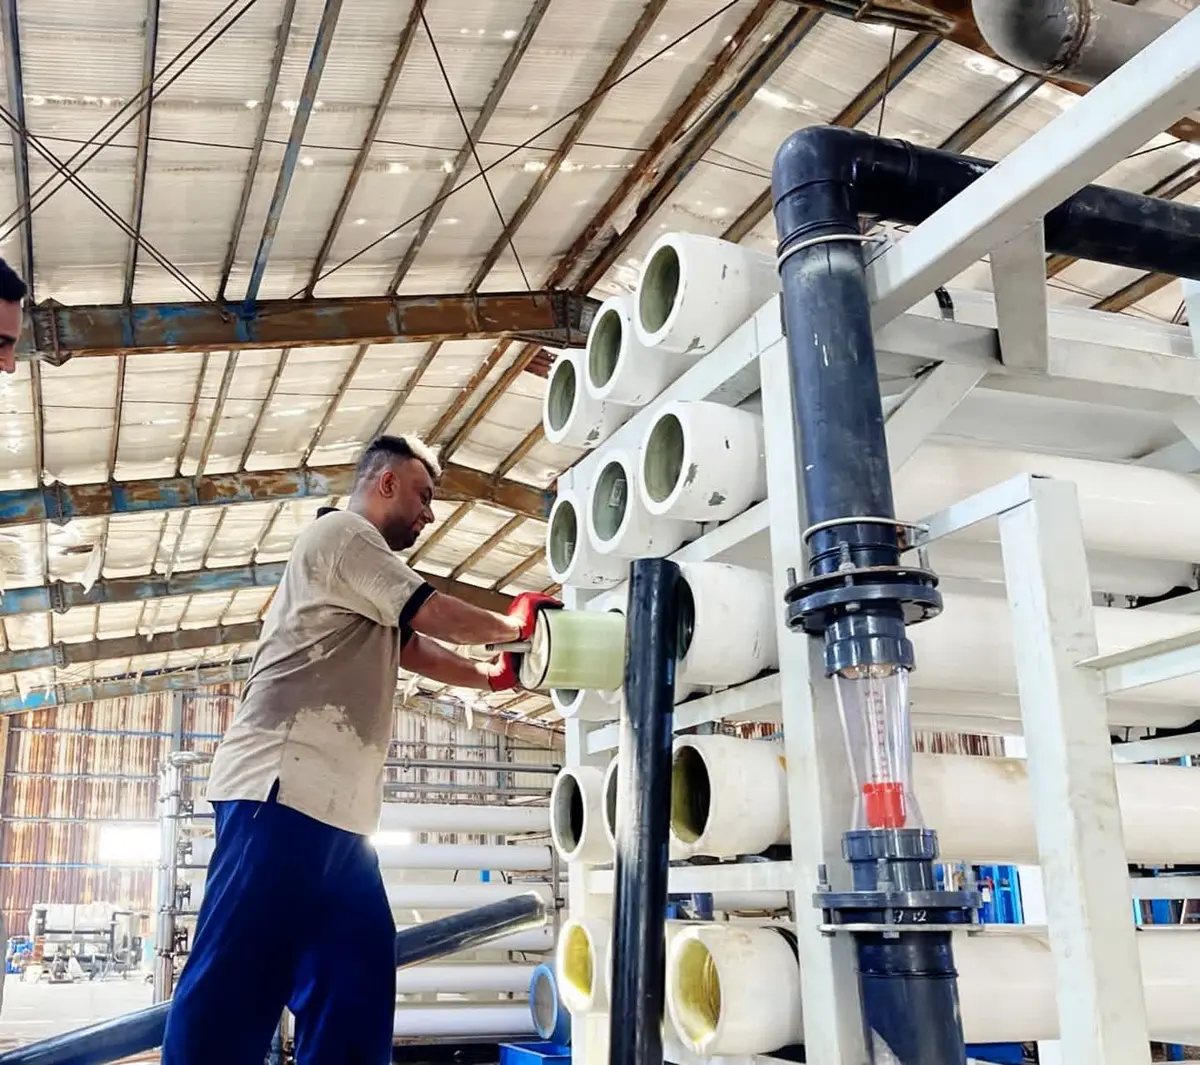 ظرفیت منبع تامین آب شهر بندری سوزا ۴۰ درصد افزایش یافت